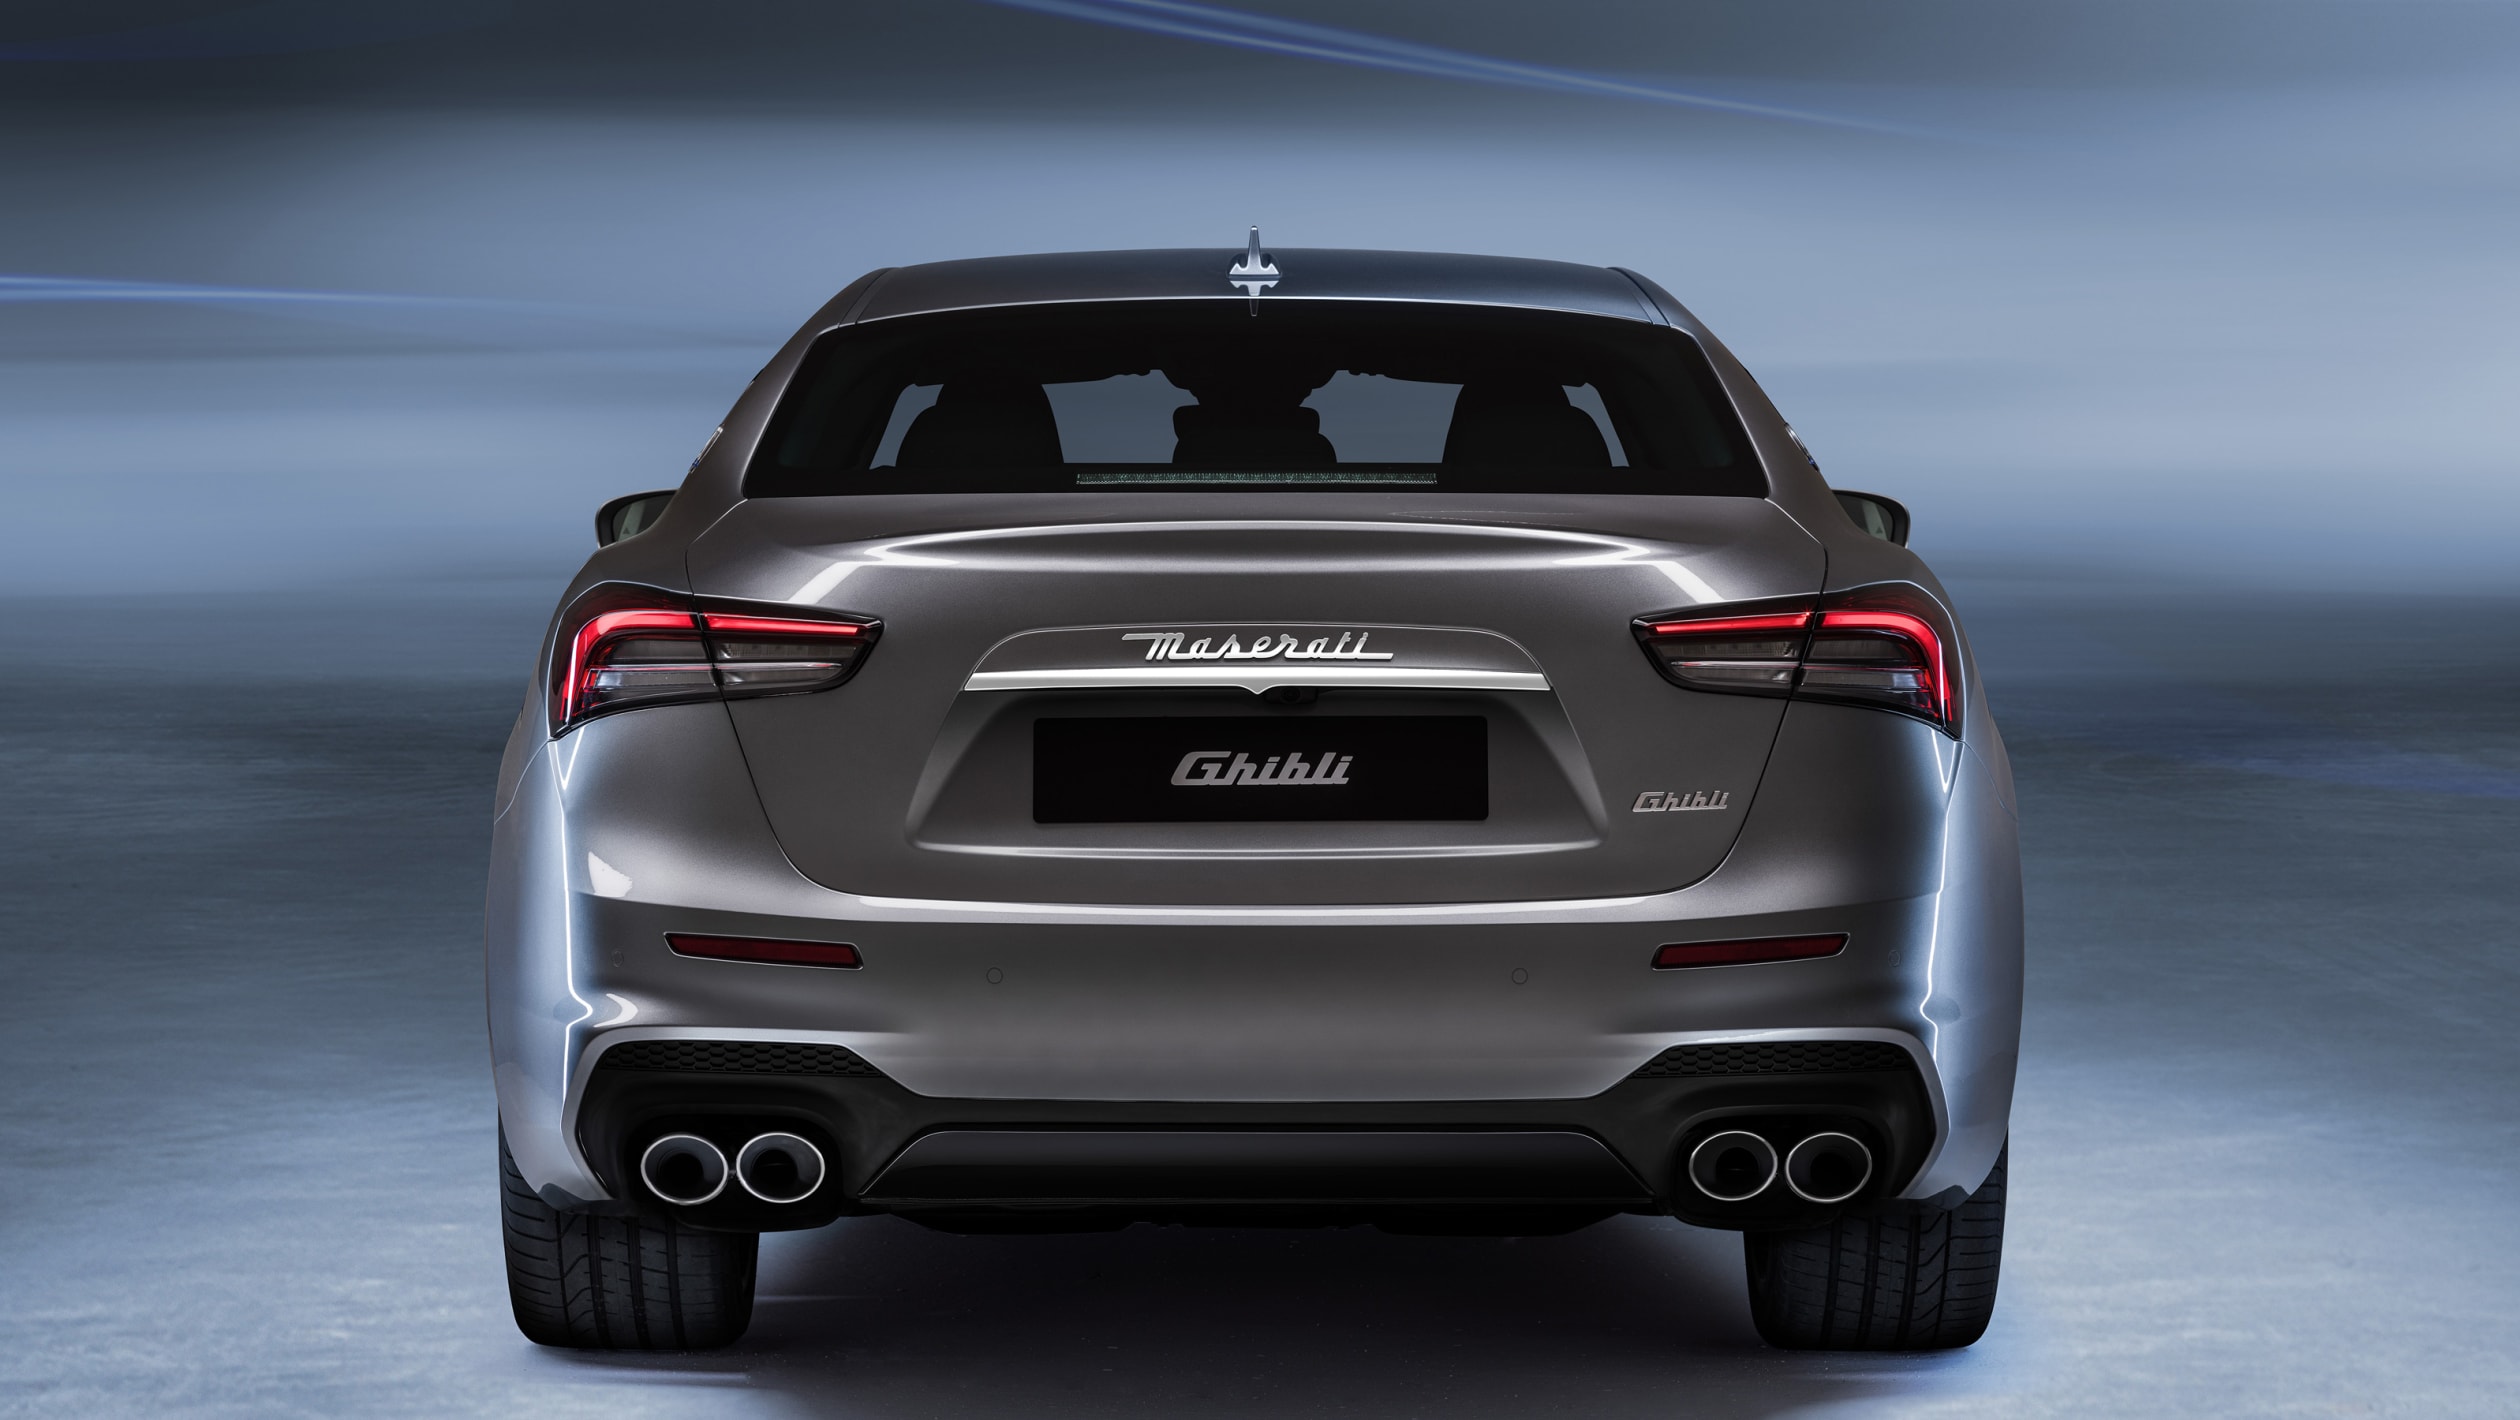 aria-label="Maserati Ghibli Hybrid 2020 official 9"